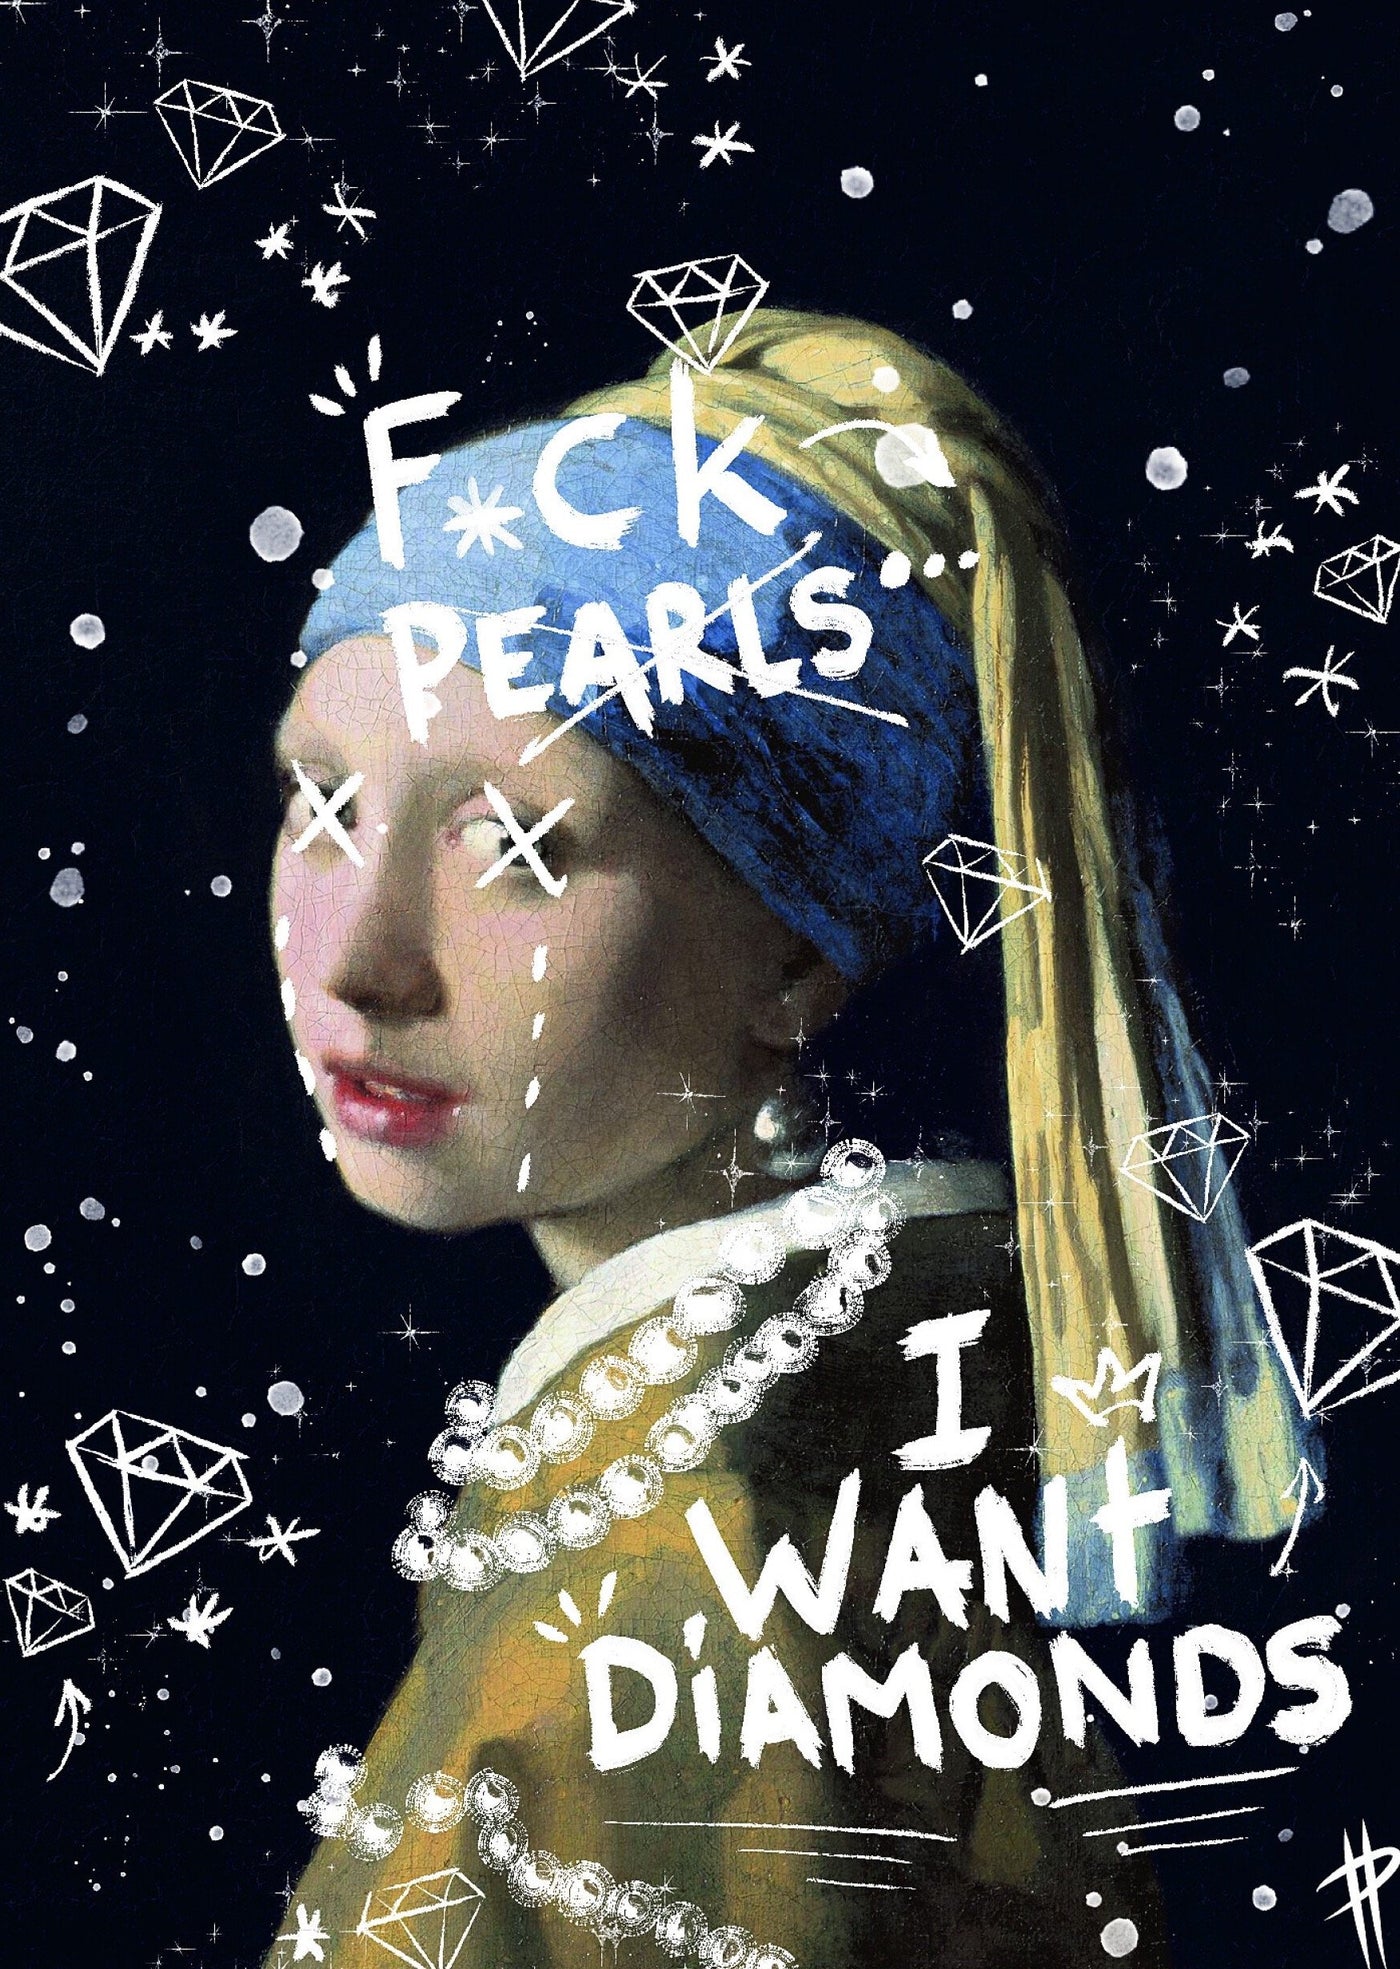 F*ck pearls - FLX Artworks